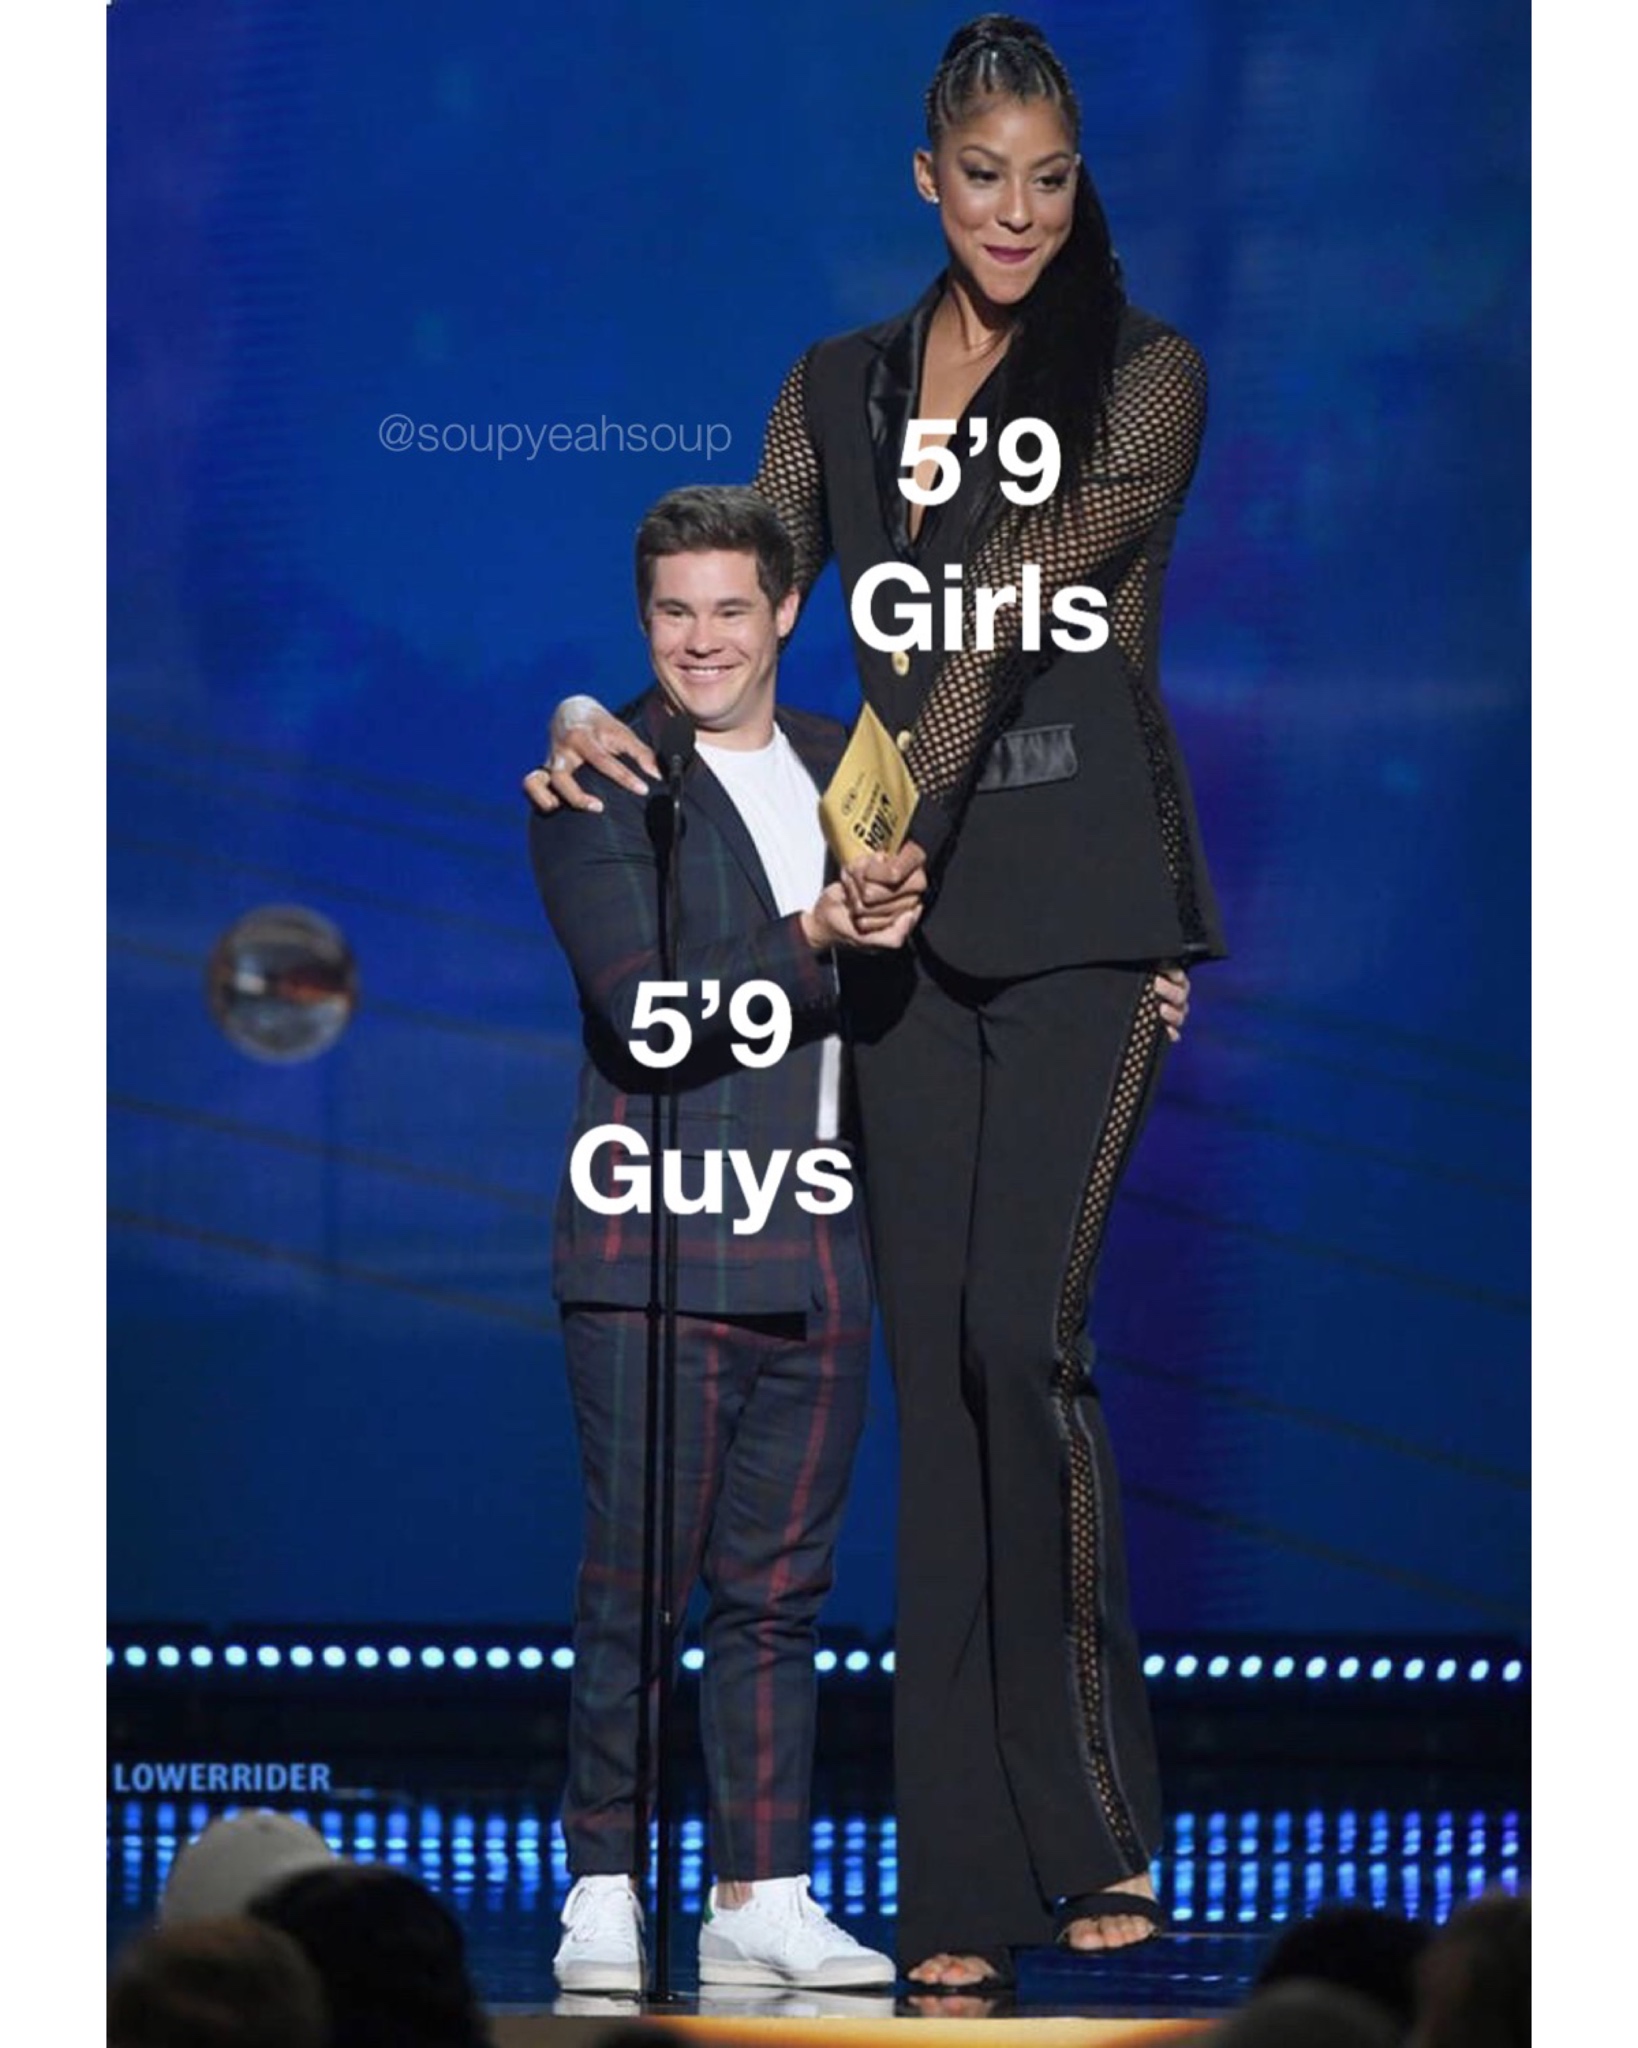 tall girl short men - 5'9 Girls 5'9 Guys Lowerrider